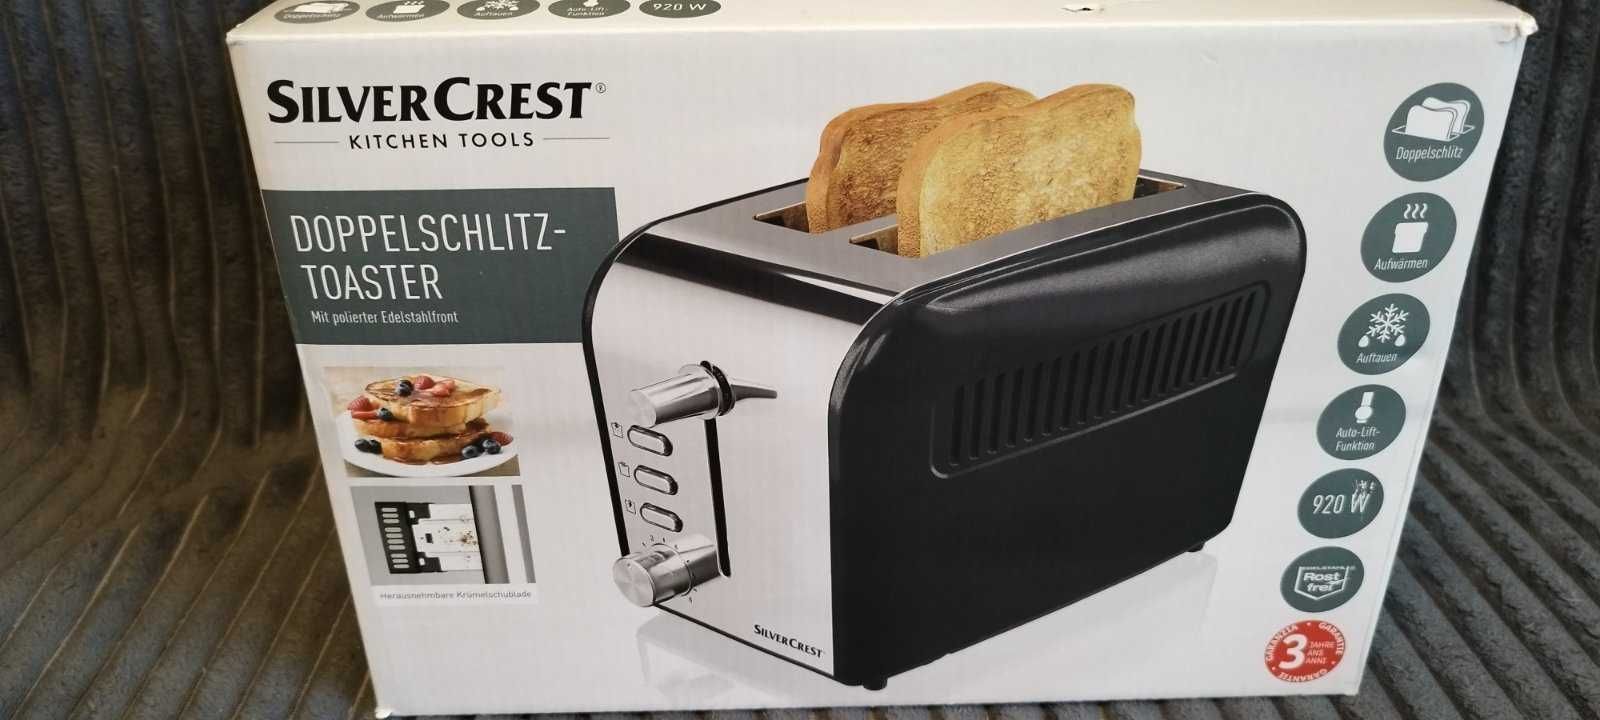 Новый Немецкий тостер Silver Crest. 920W. Новый в коробке!